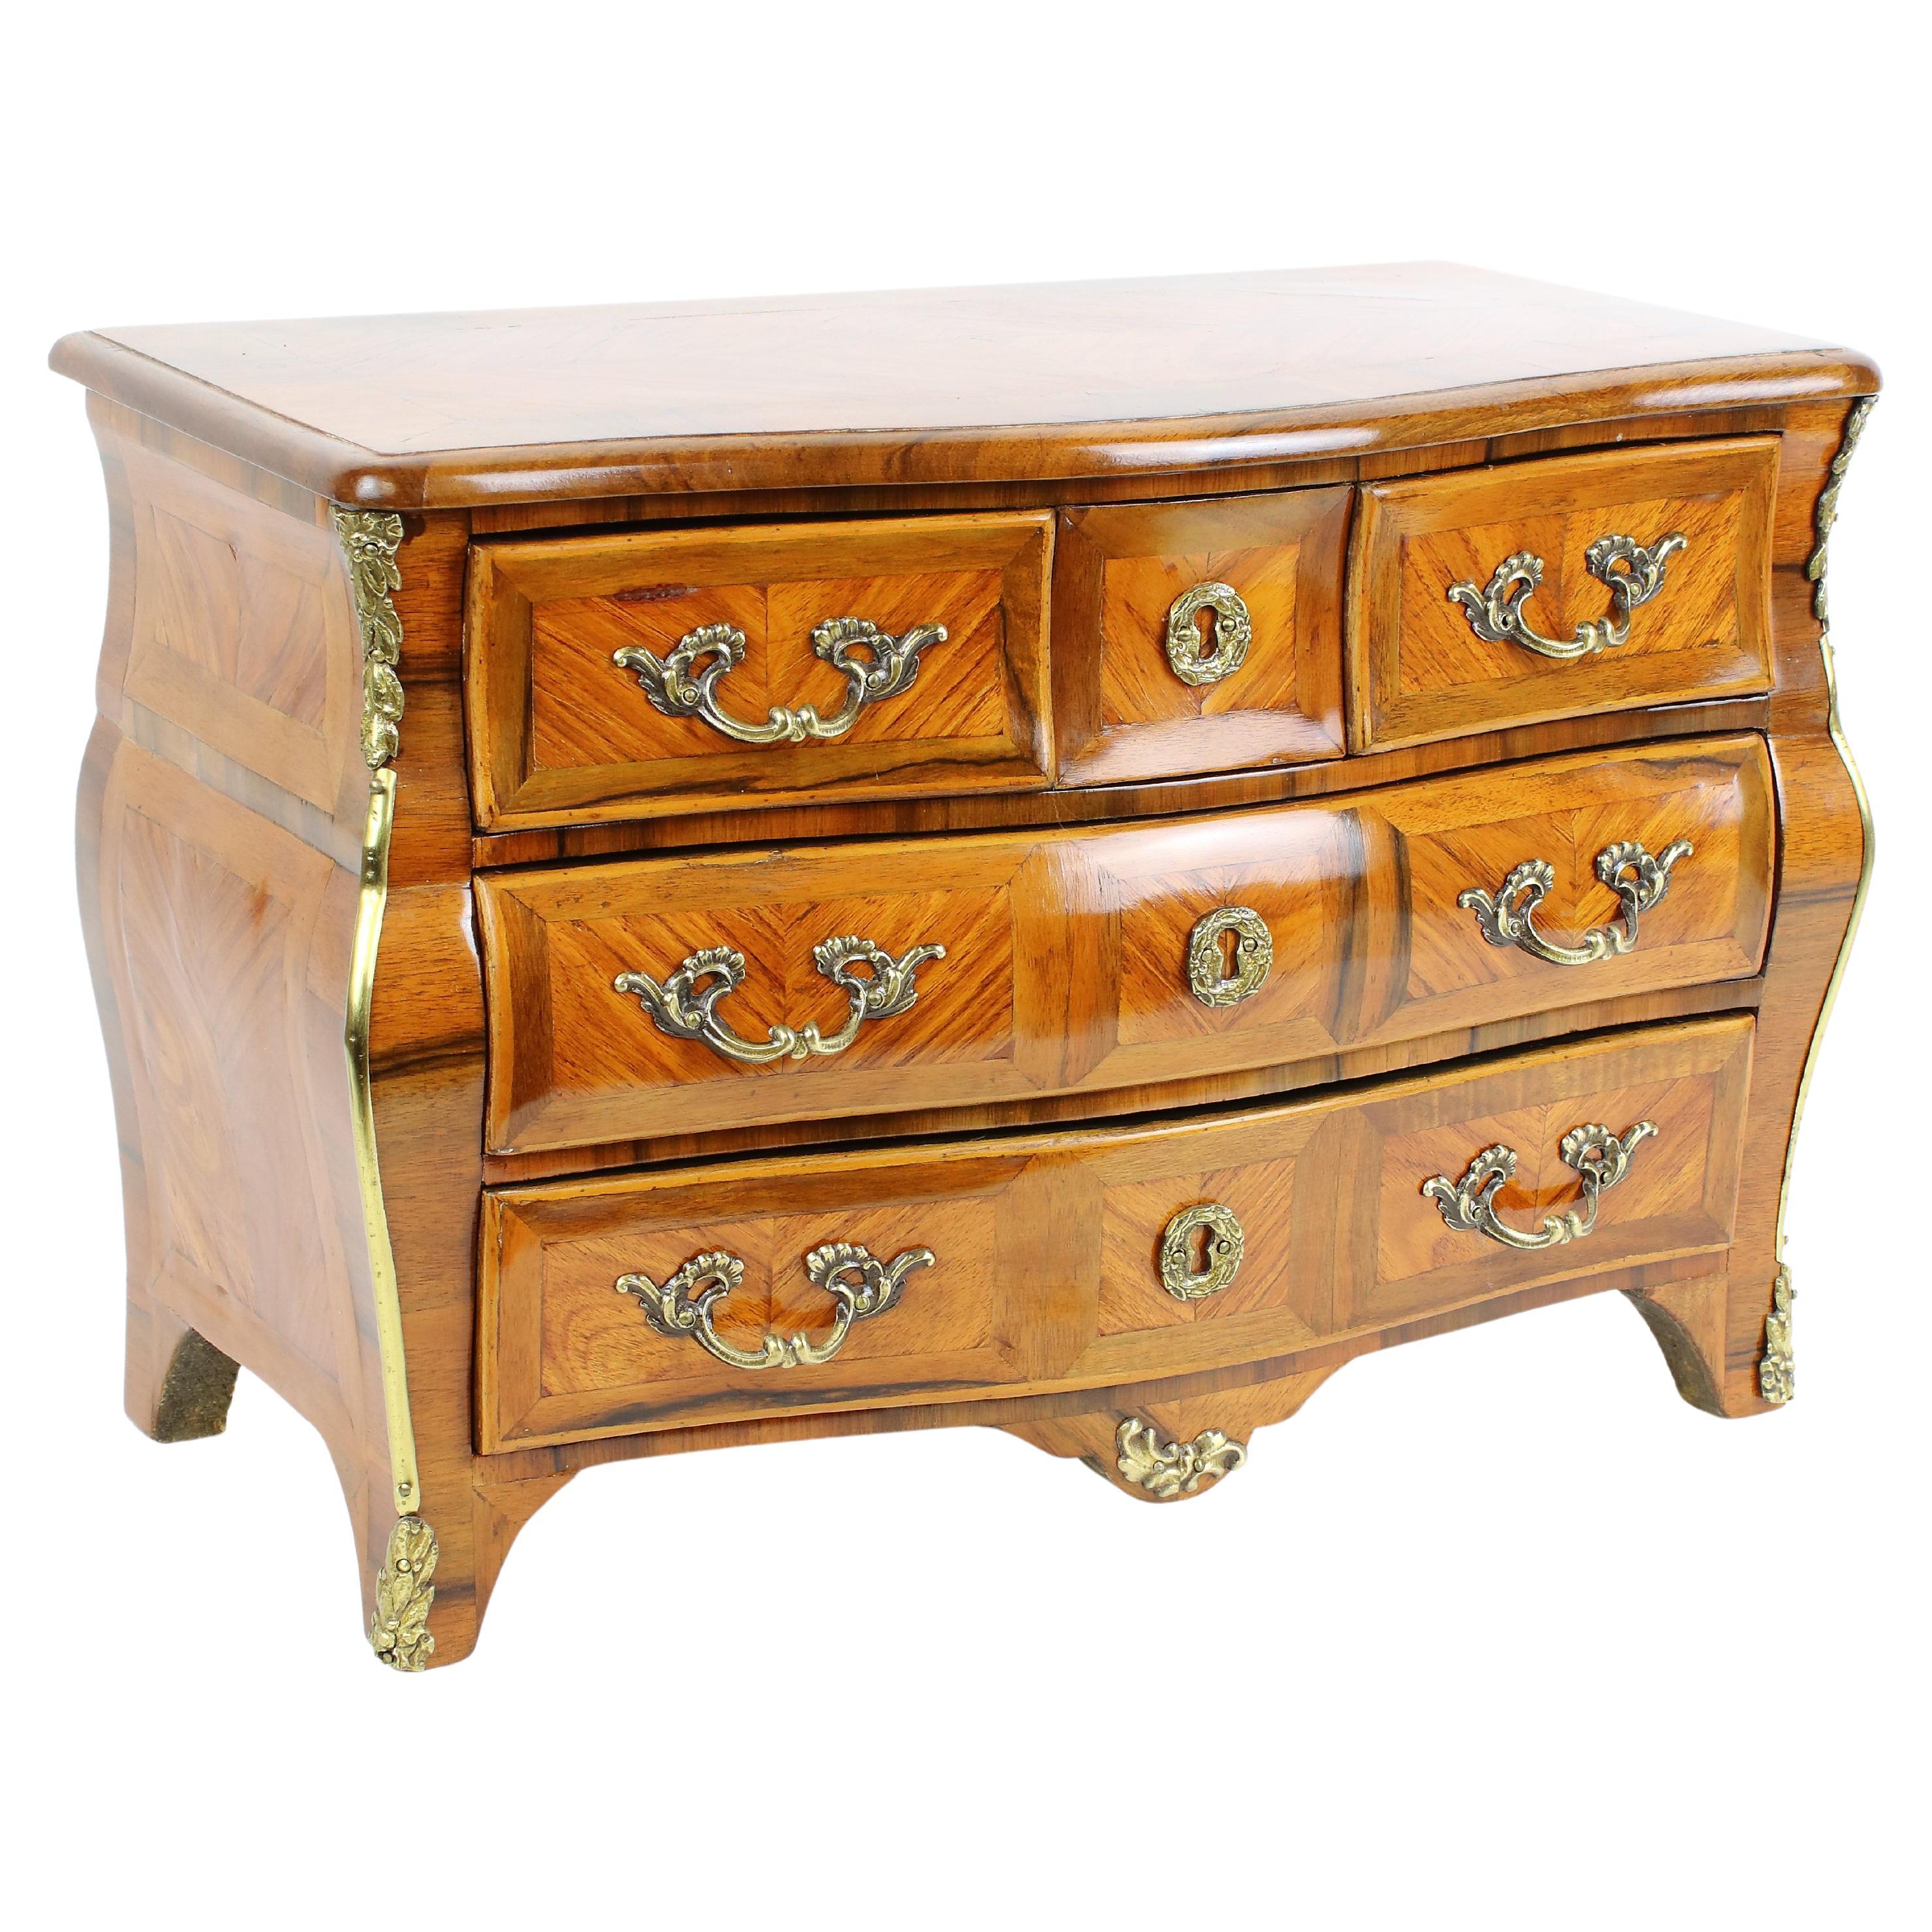 Commode ou coffre à tiroirs miniature de style Louis XV La Parisienne